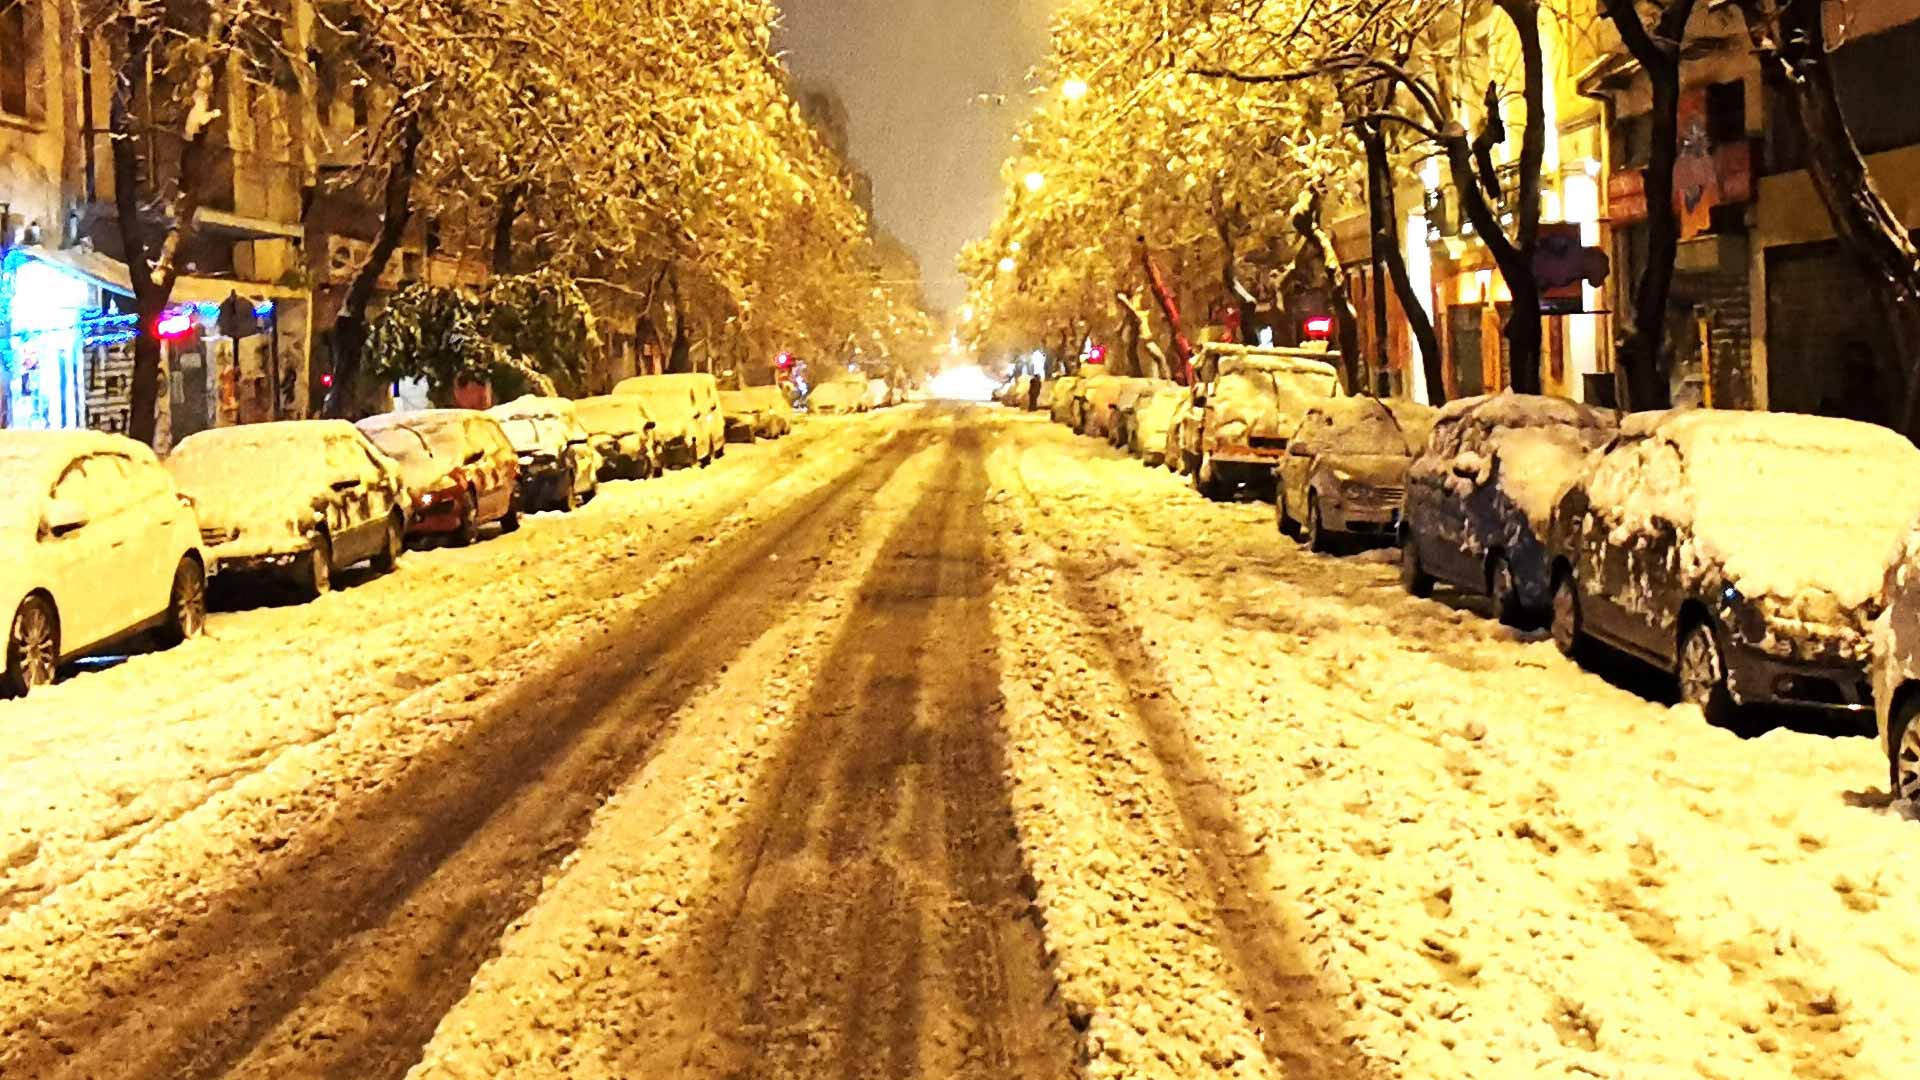 Καιρός: Έρχεται ο ρωσικός χειμώνας μέσα στον Φλεβάρη - Πού θα χιονίσει και πότε